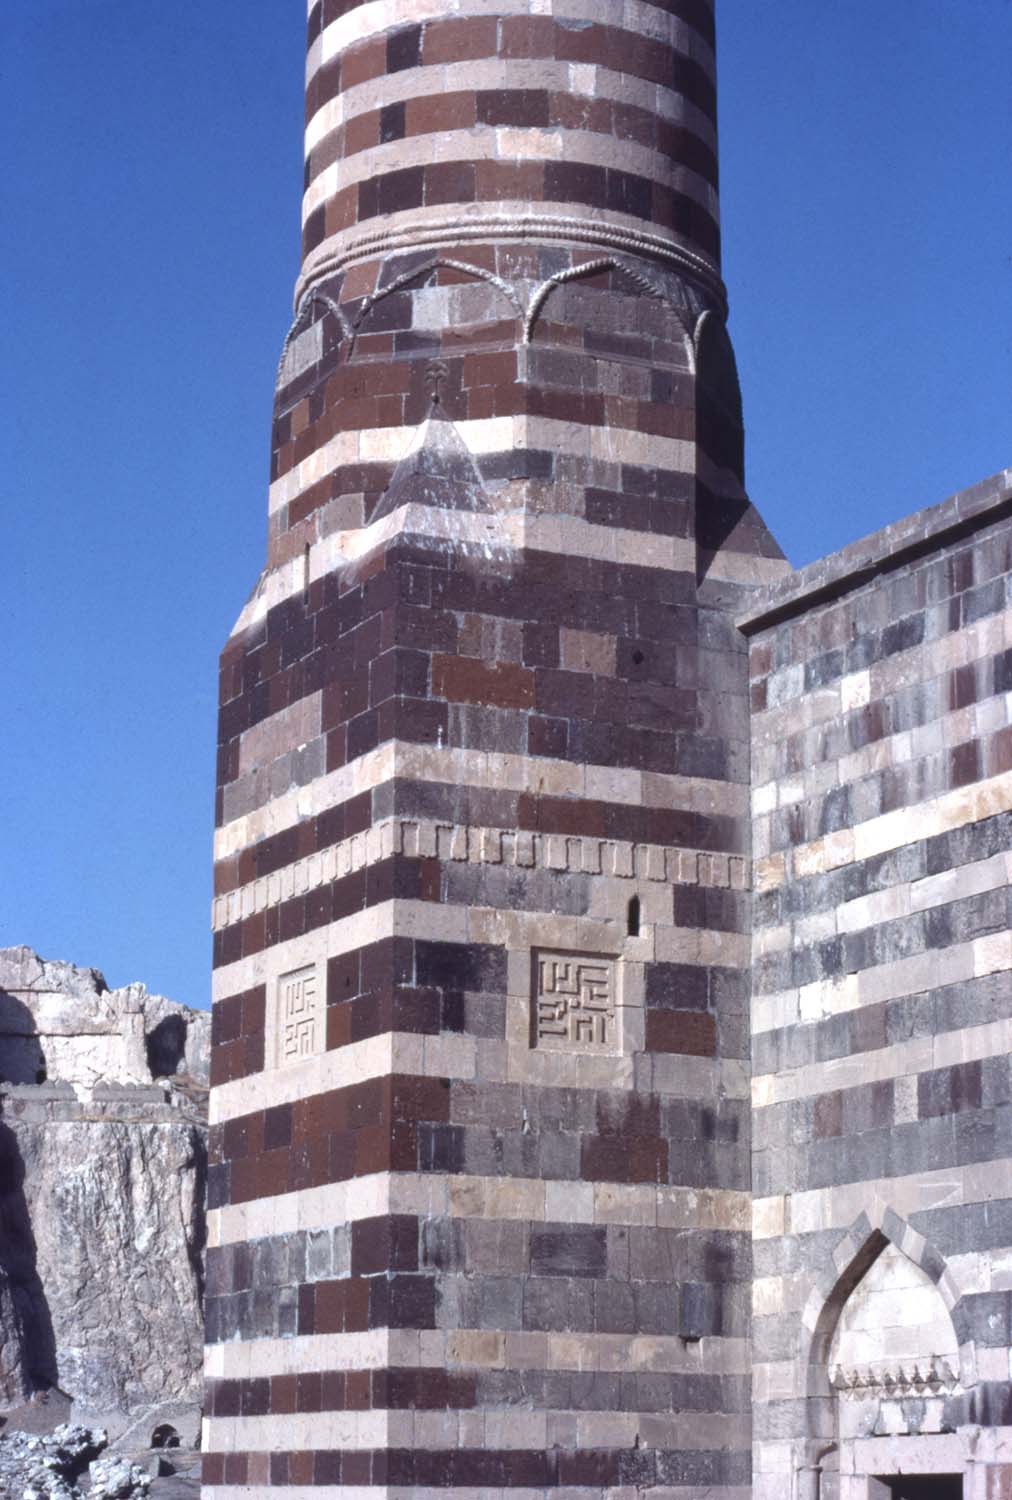 Base of minaret.